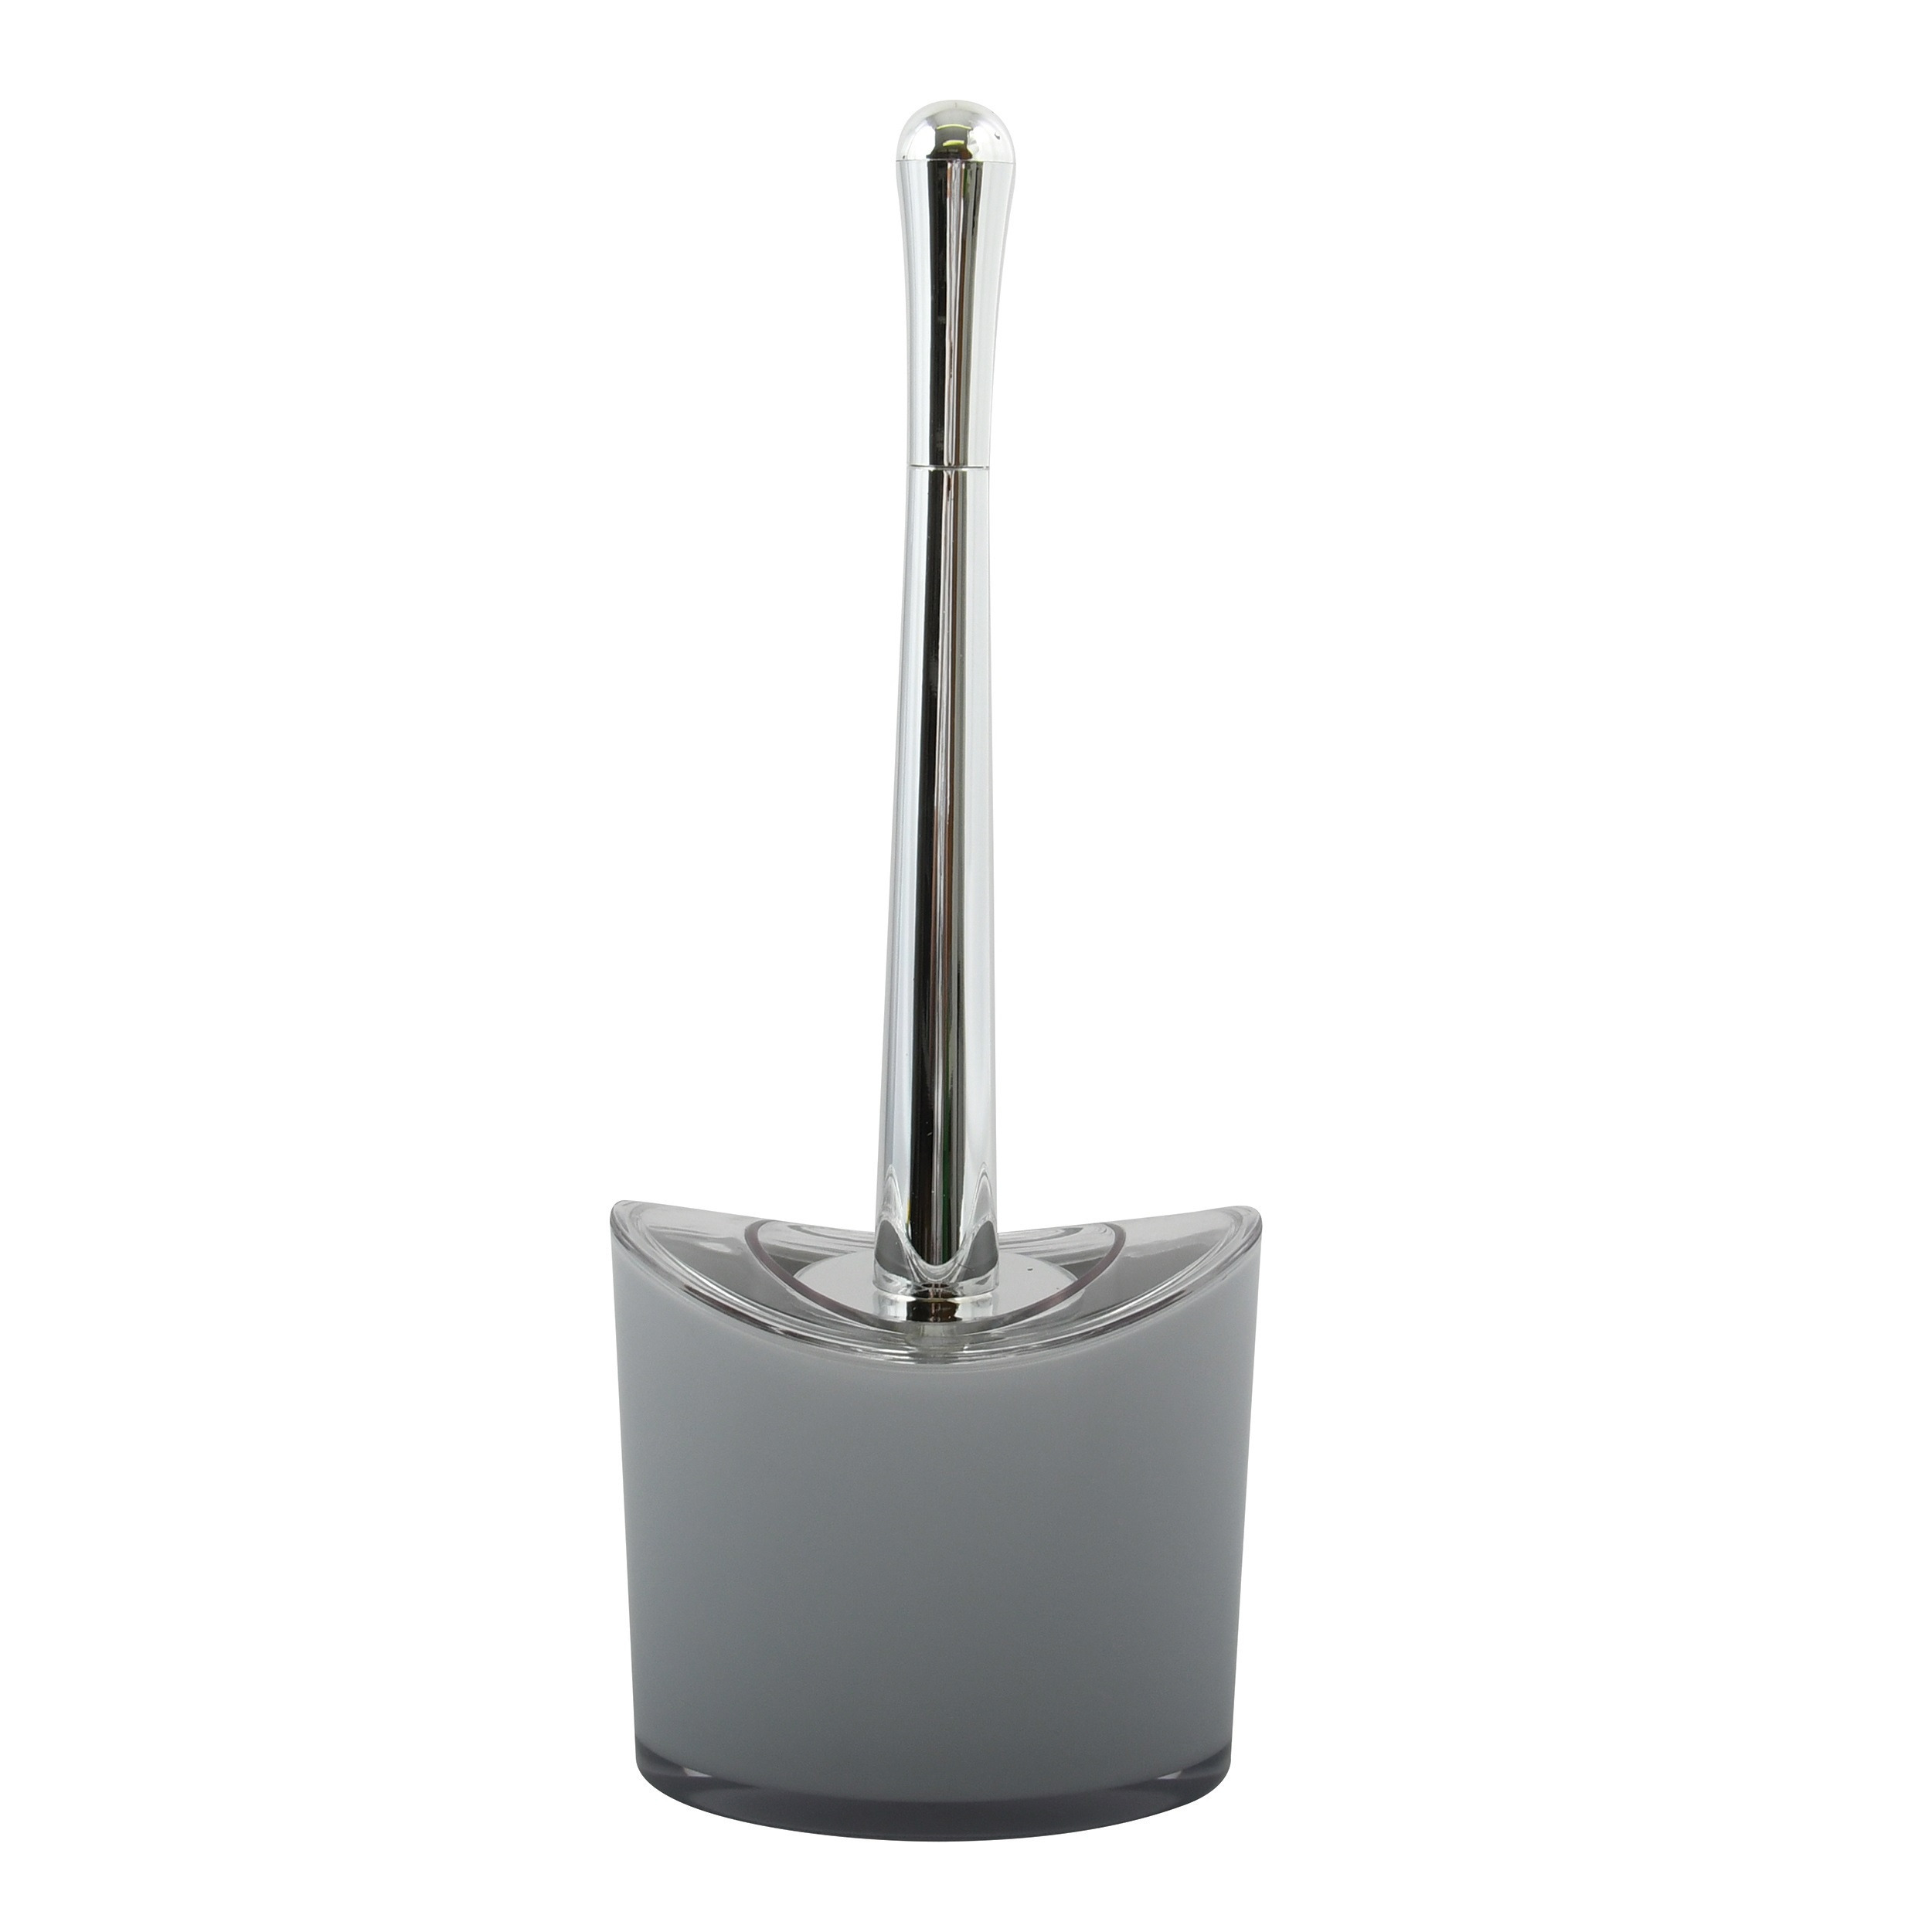 MSV Toiletborstel in houder/wc-borstel Aveiro - PS kunststof/rvs - lichtgrijs/zilver - x 14 cm -